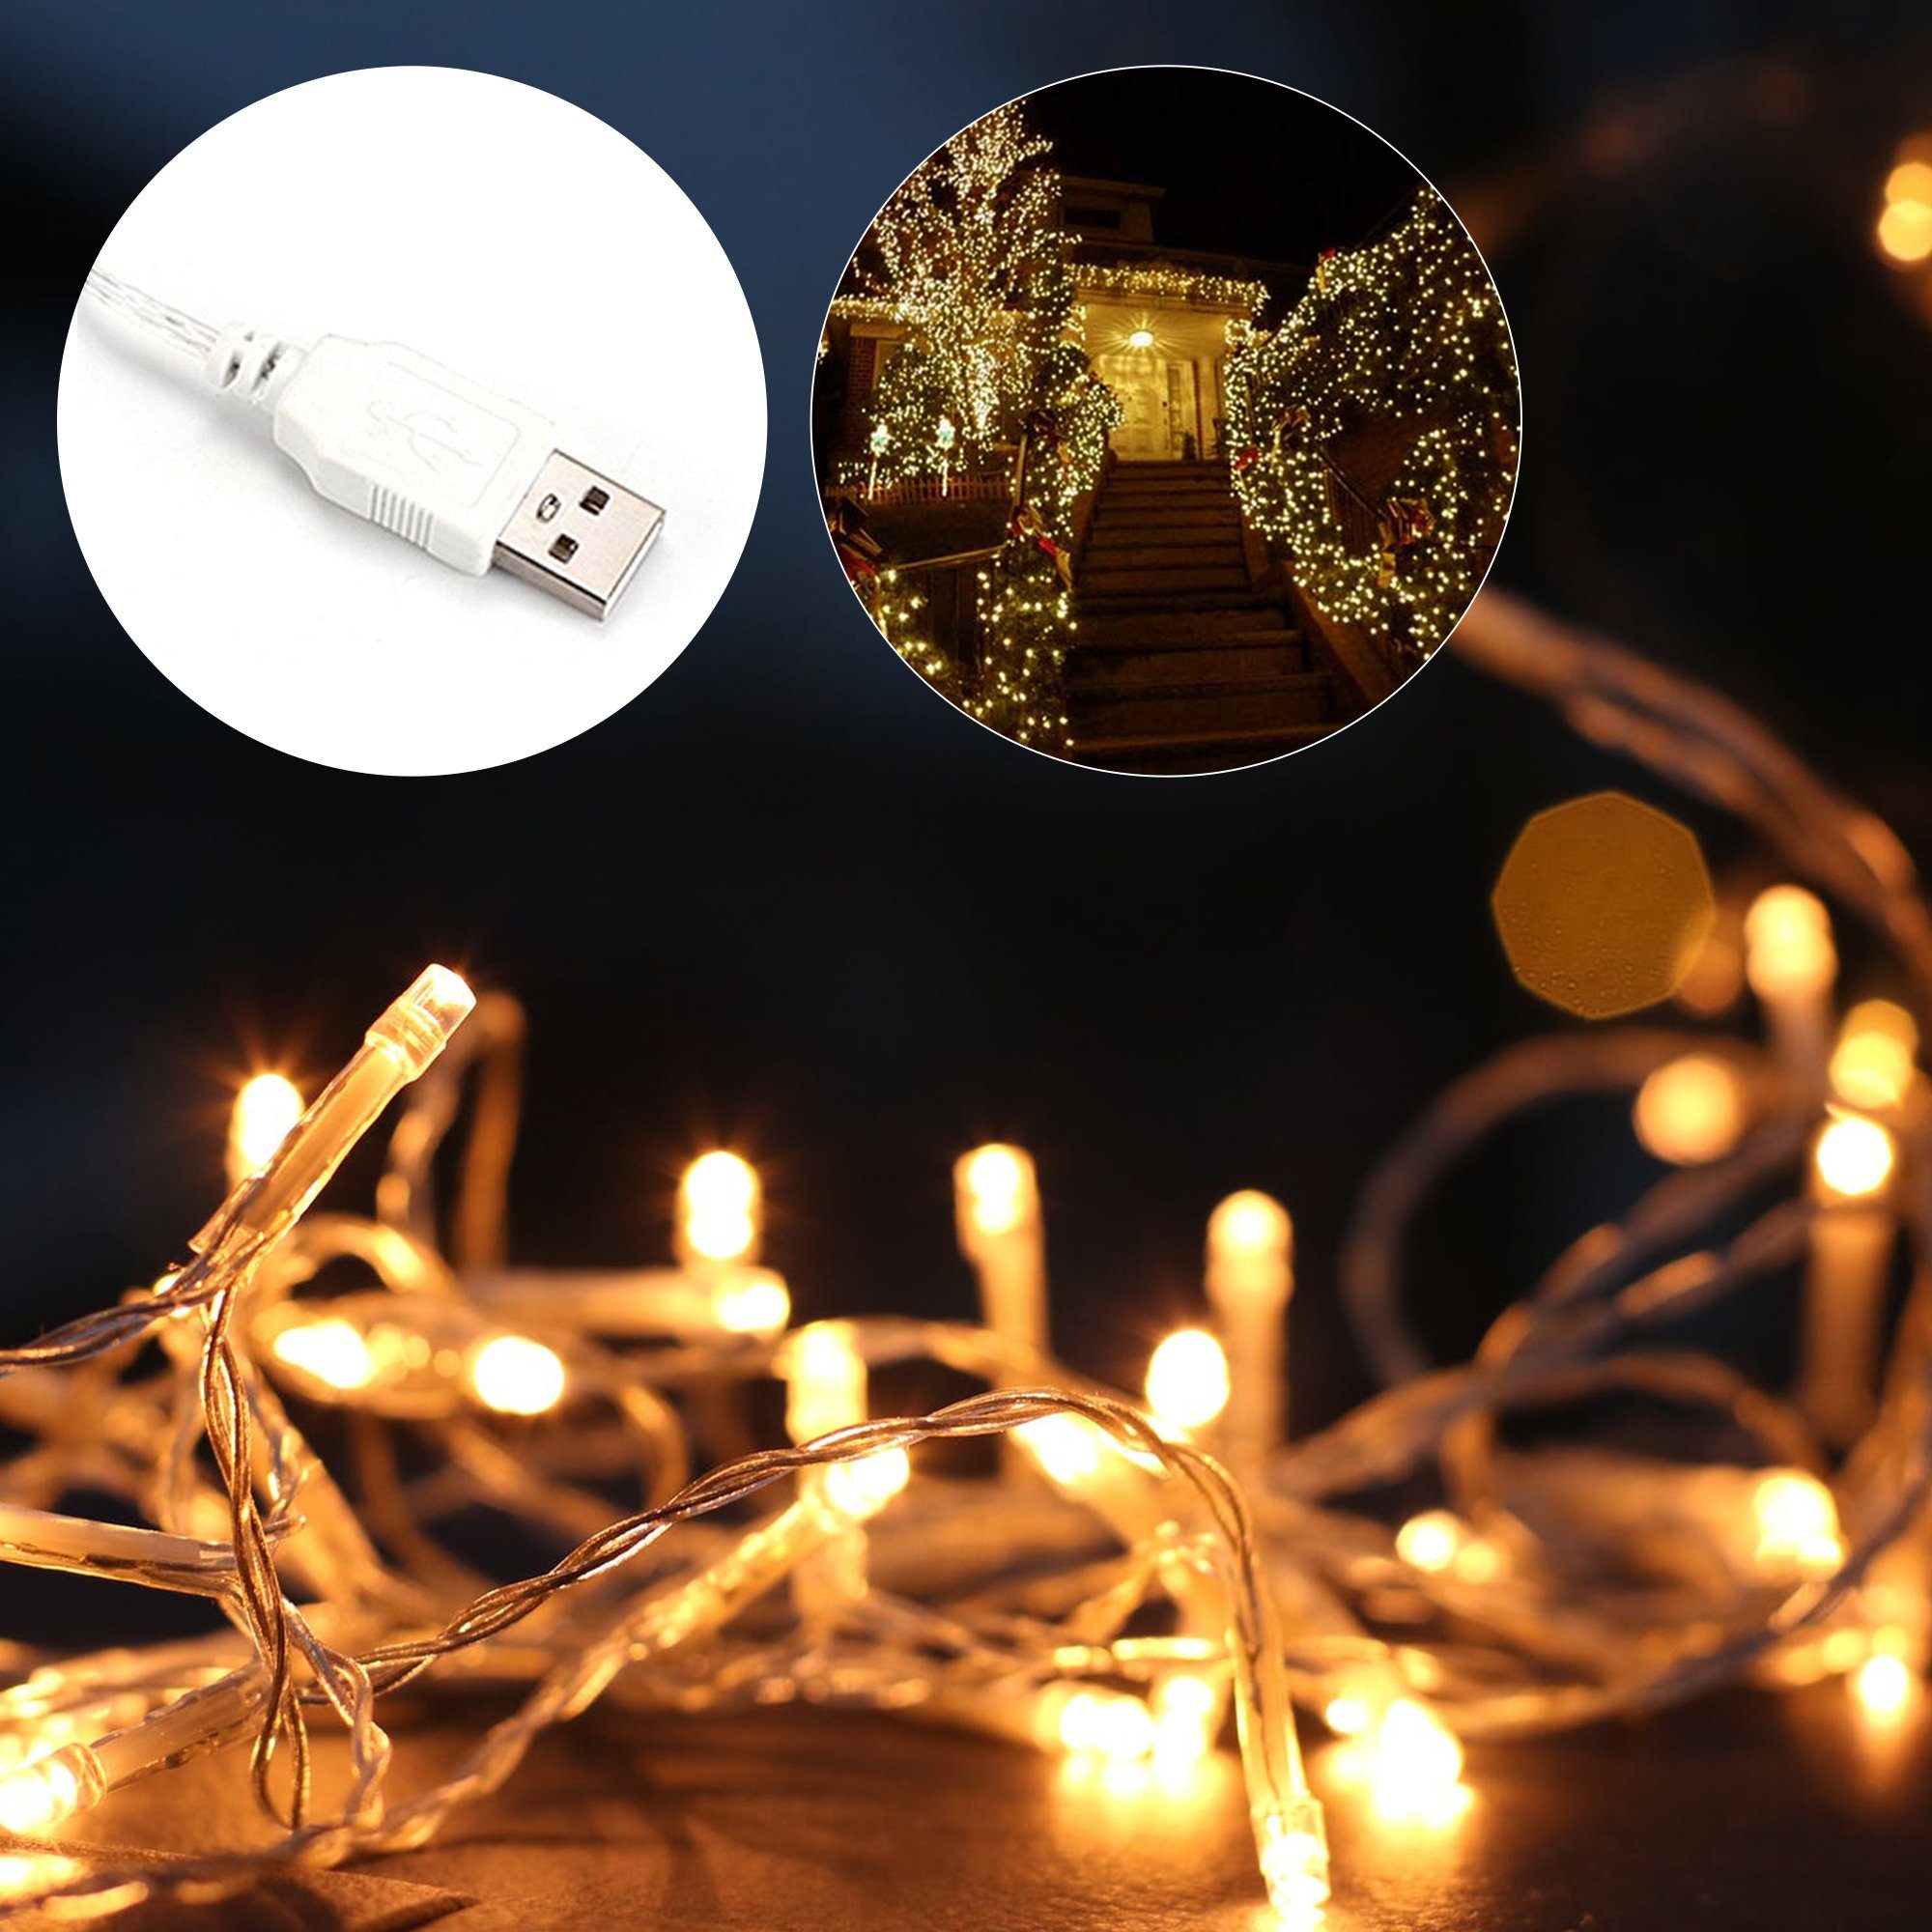 Salcar LED-Lichterkette »10m USB Lichterkette Outdoor Indoor, 100 LED  Kupferdraht Lichterkette Weihnachten Advent, Weihnachtsbeleuchtung  Weihnachtsdekoration für Innen und Außen, Warmweiß/Bunt« online kaufen |  OTTO